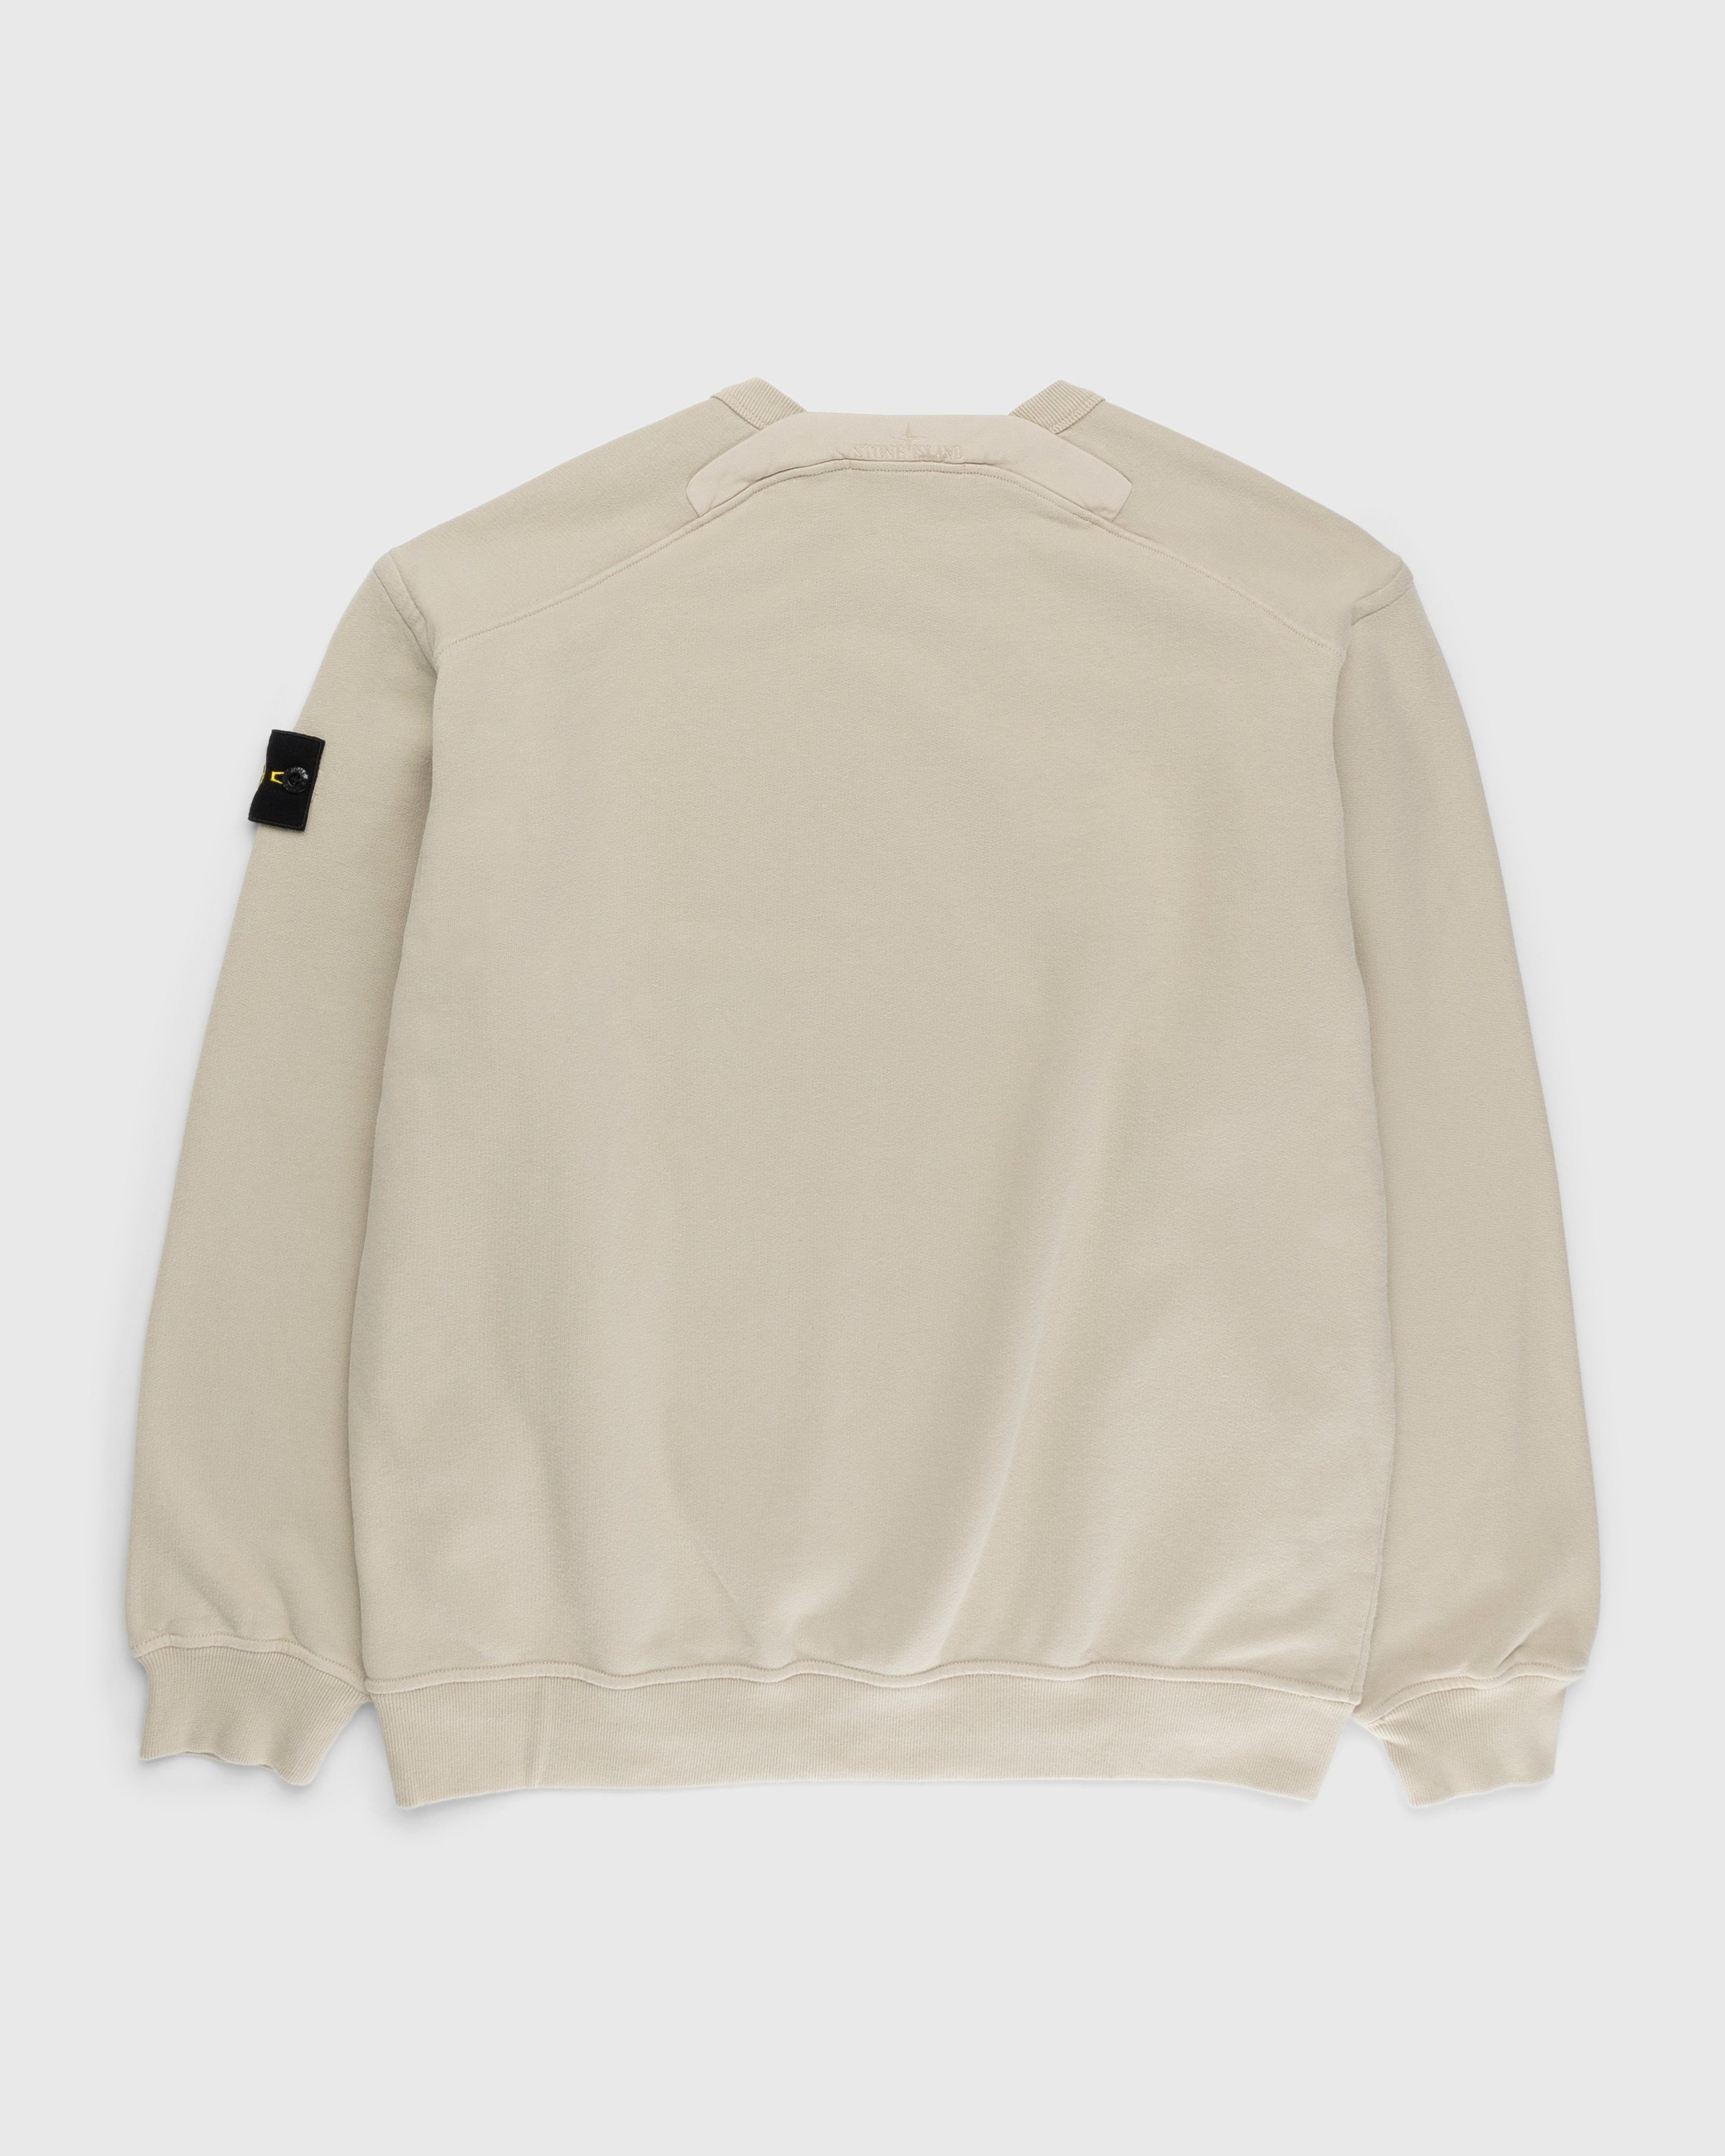 Stone Island – Garment-Dyed Fleece Crewneck Sweatshirt Beige